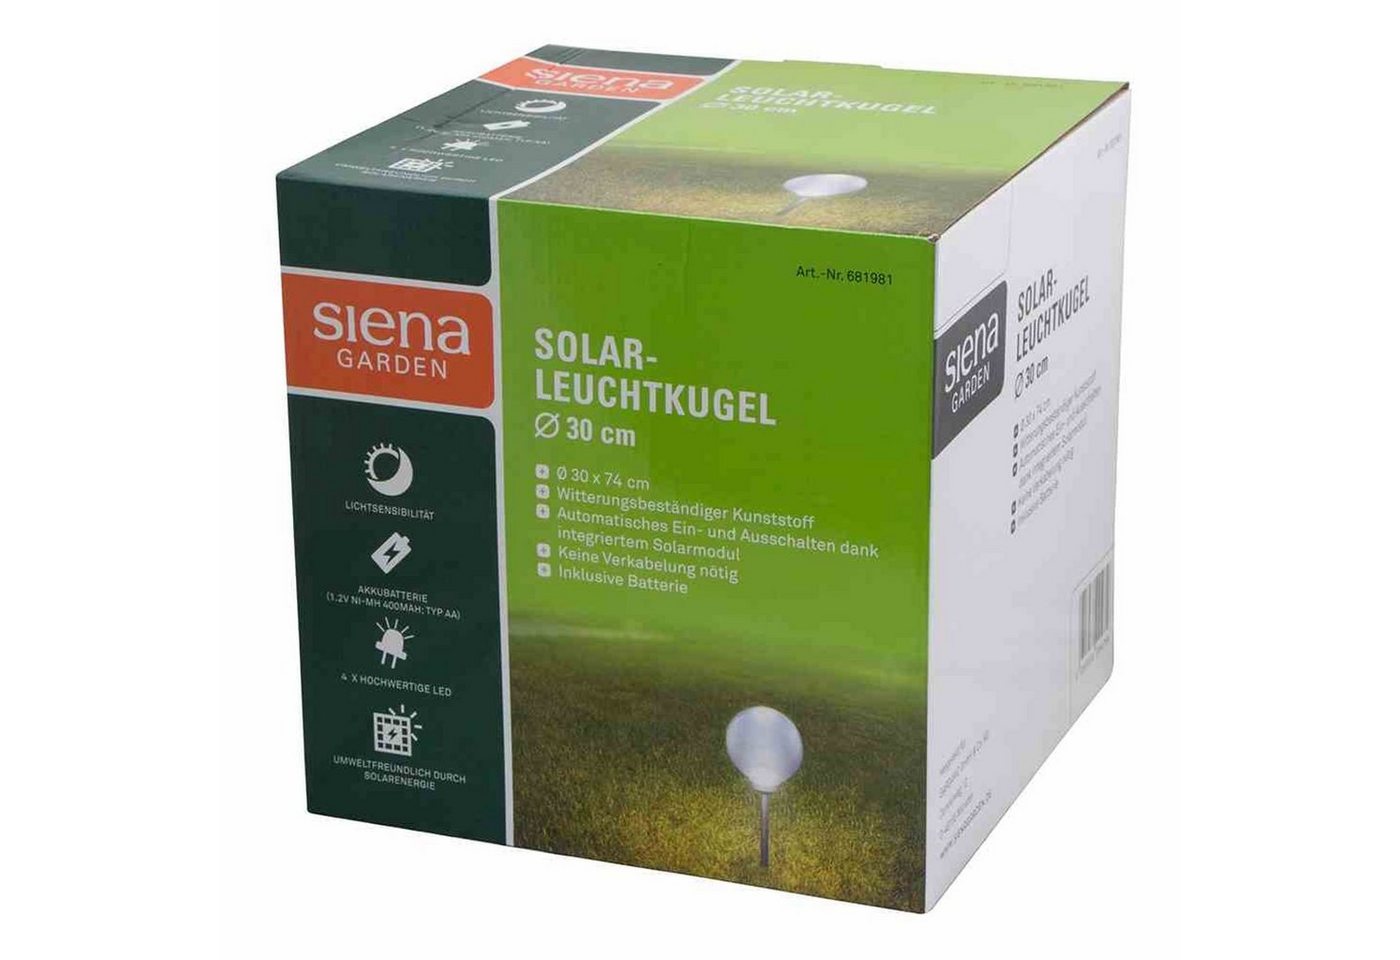 Siena Garden Gartenleuchte Solar-Leuchtkugel Ø 30 cm, Kunststoff 4 LED, Ø 30 x 66,5 cm, kartonver von Siena Garden